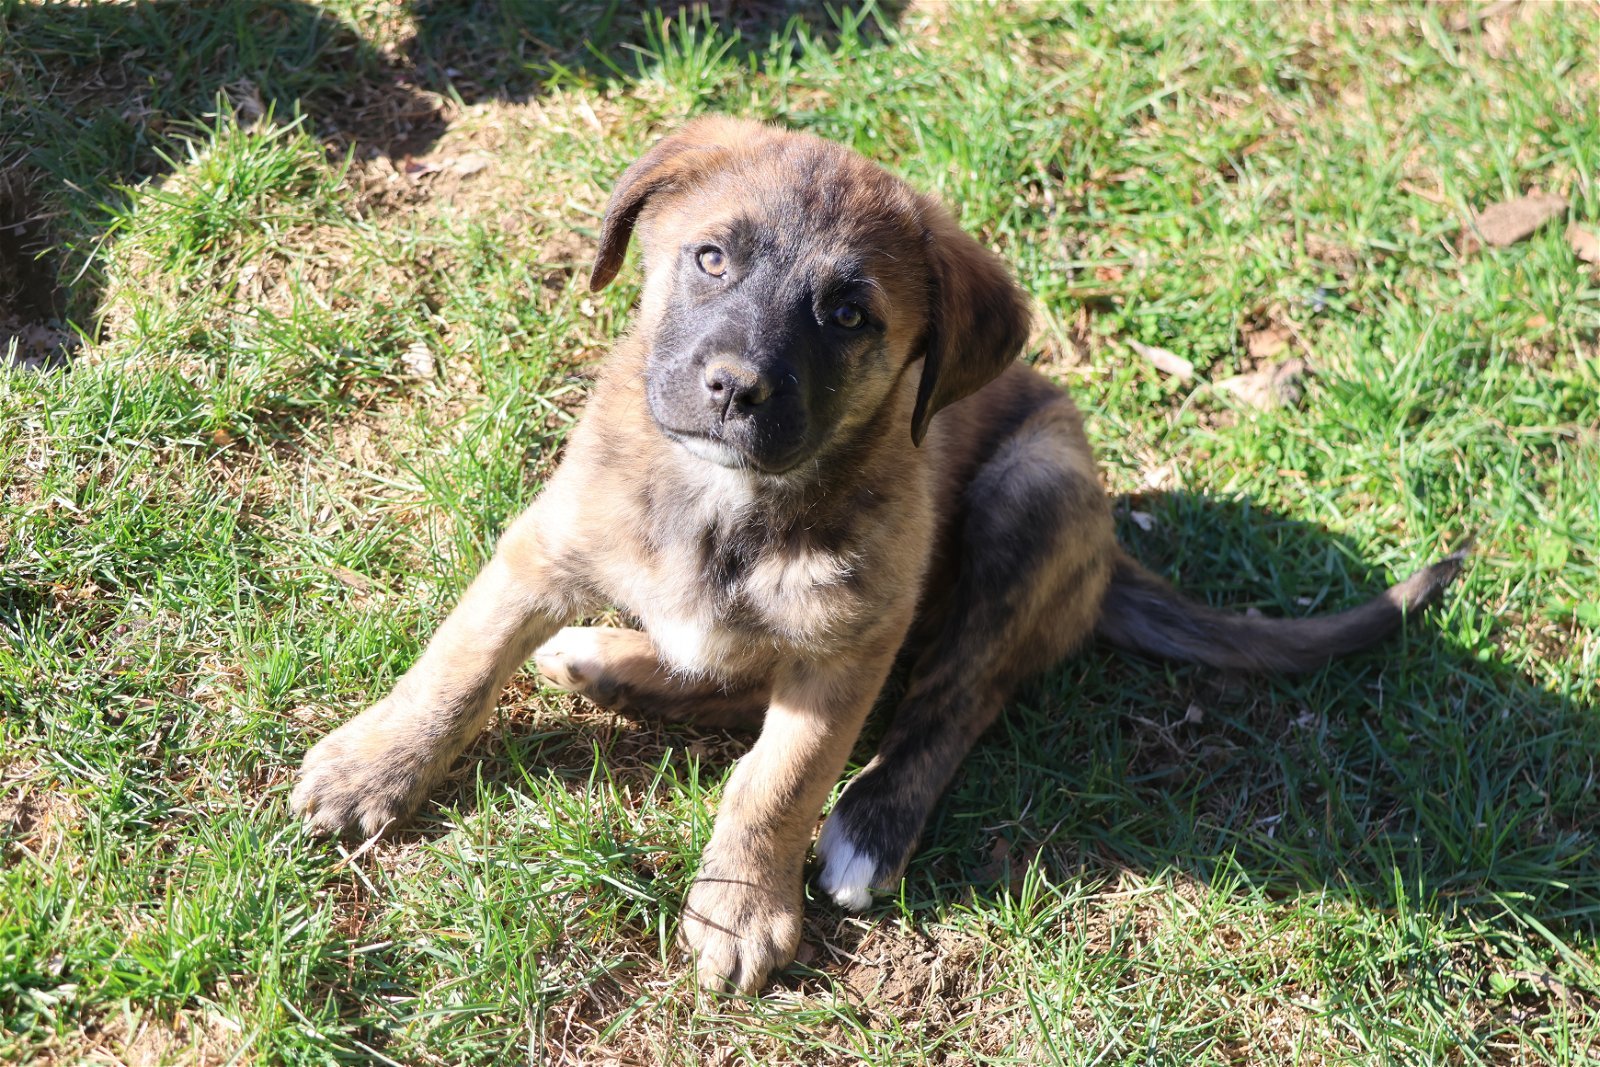 POTATO, an adoptable Labrador Retriever in Sebec, ME, 04481 | Photo Image 2